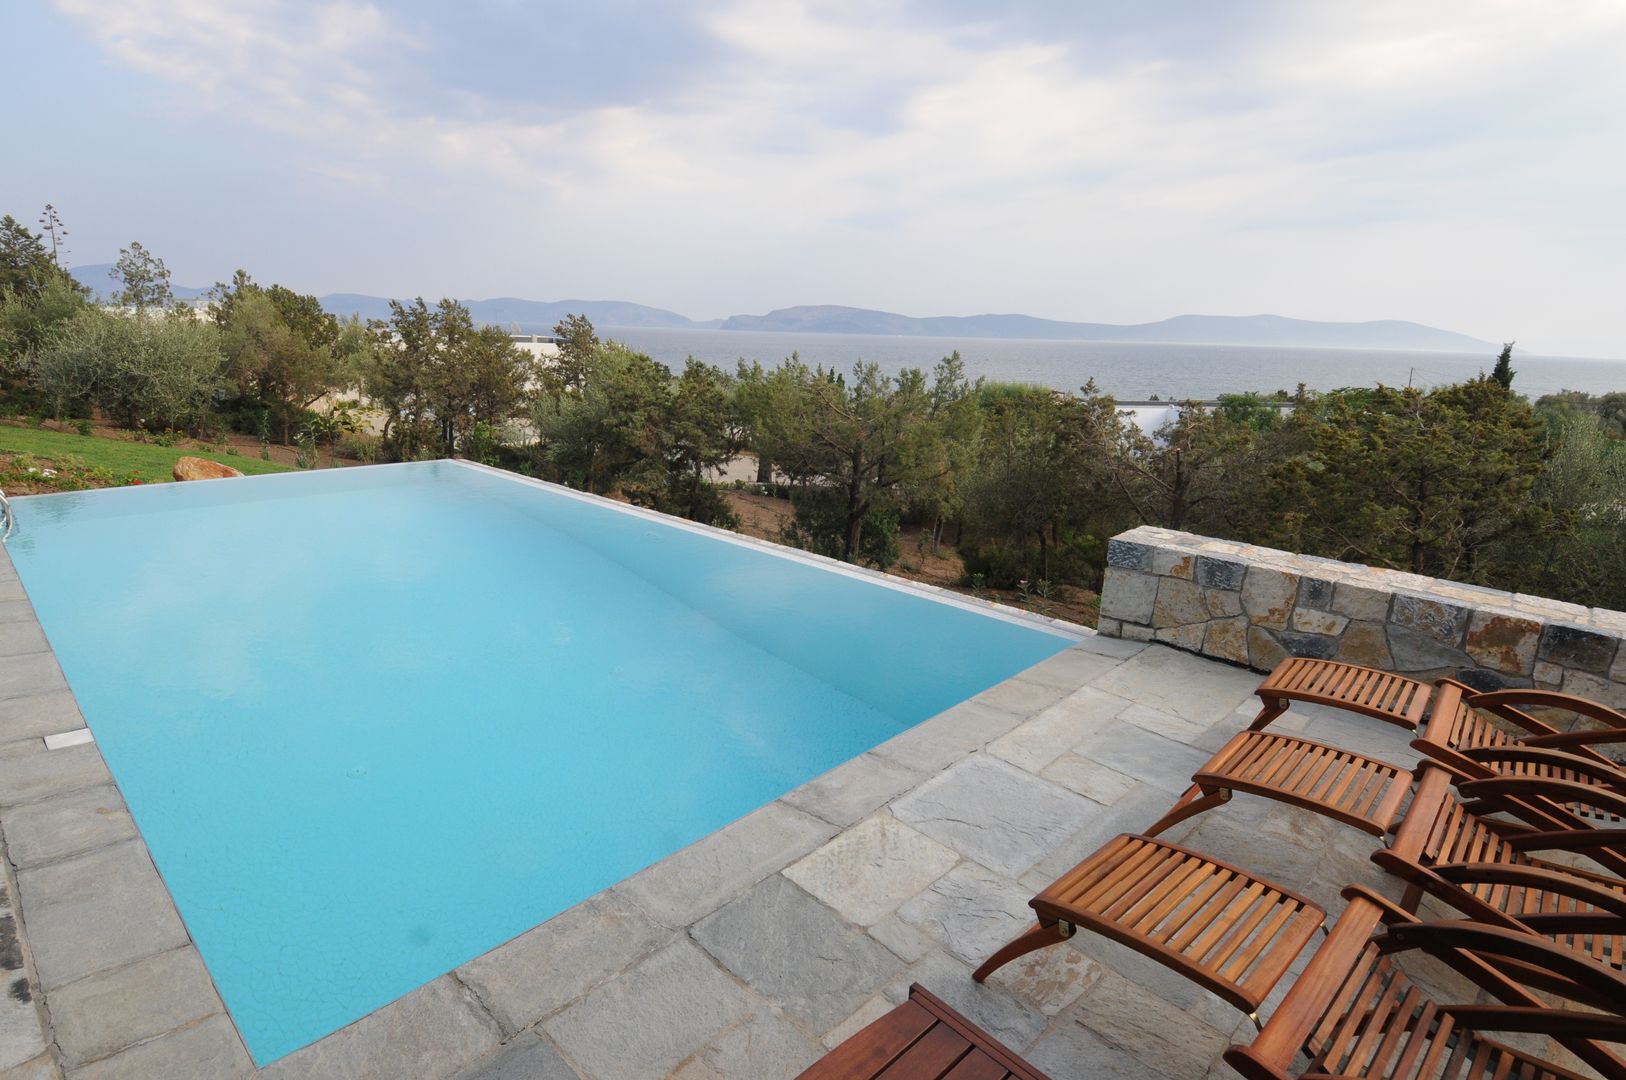 Dettaglio della piscina CARLO CHIAPPANI interior designer Piscina in stile mediterraneo